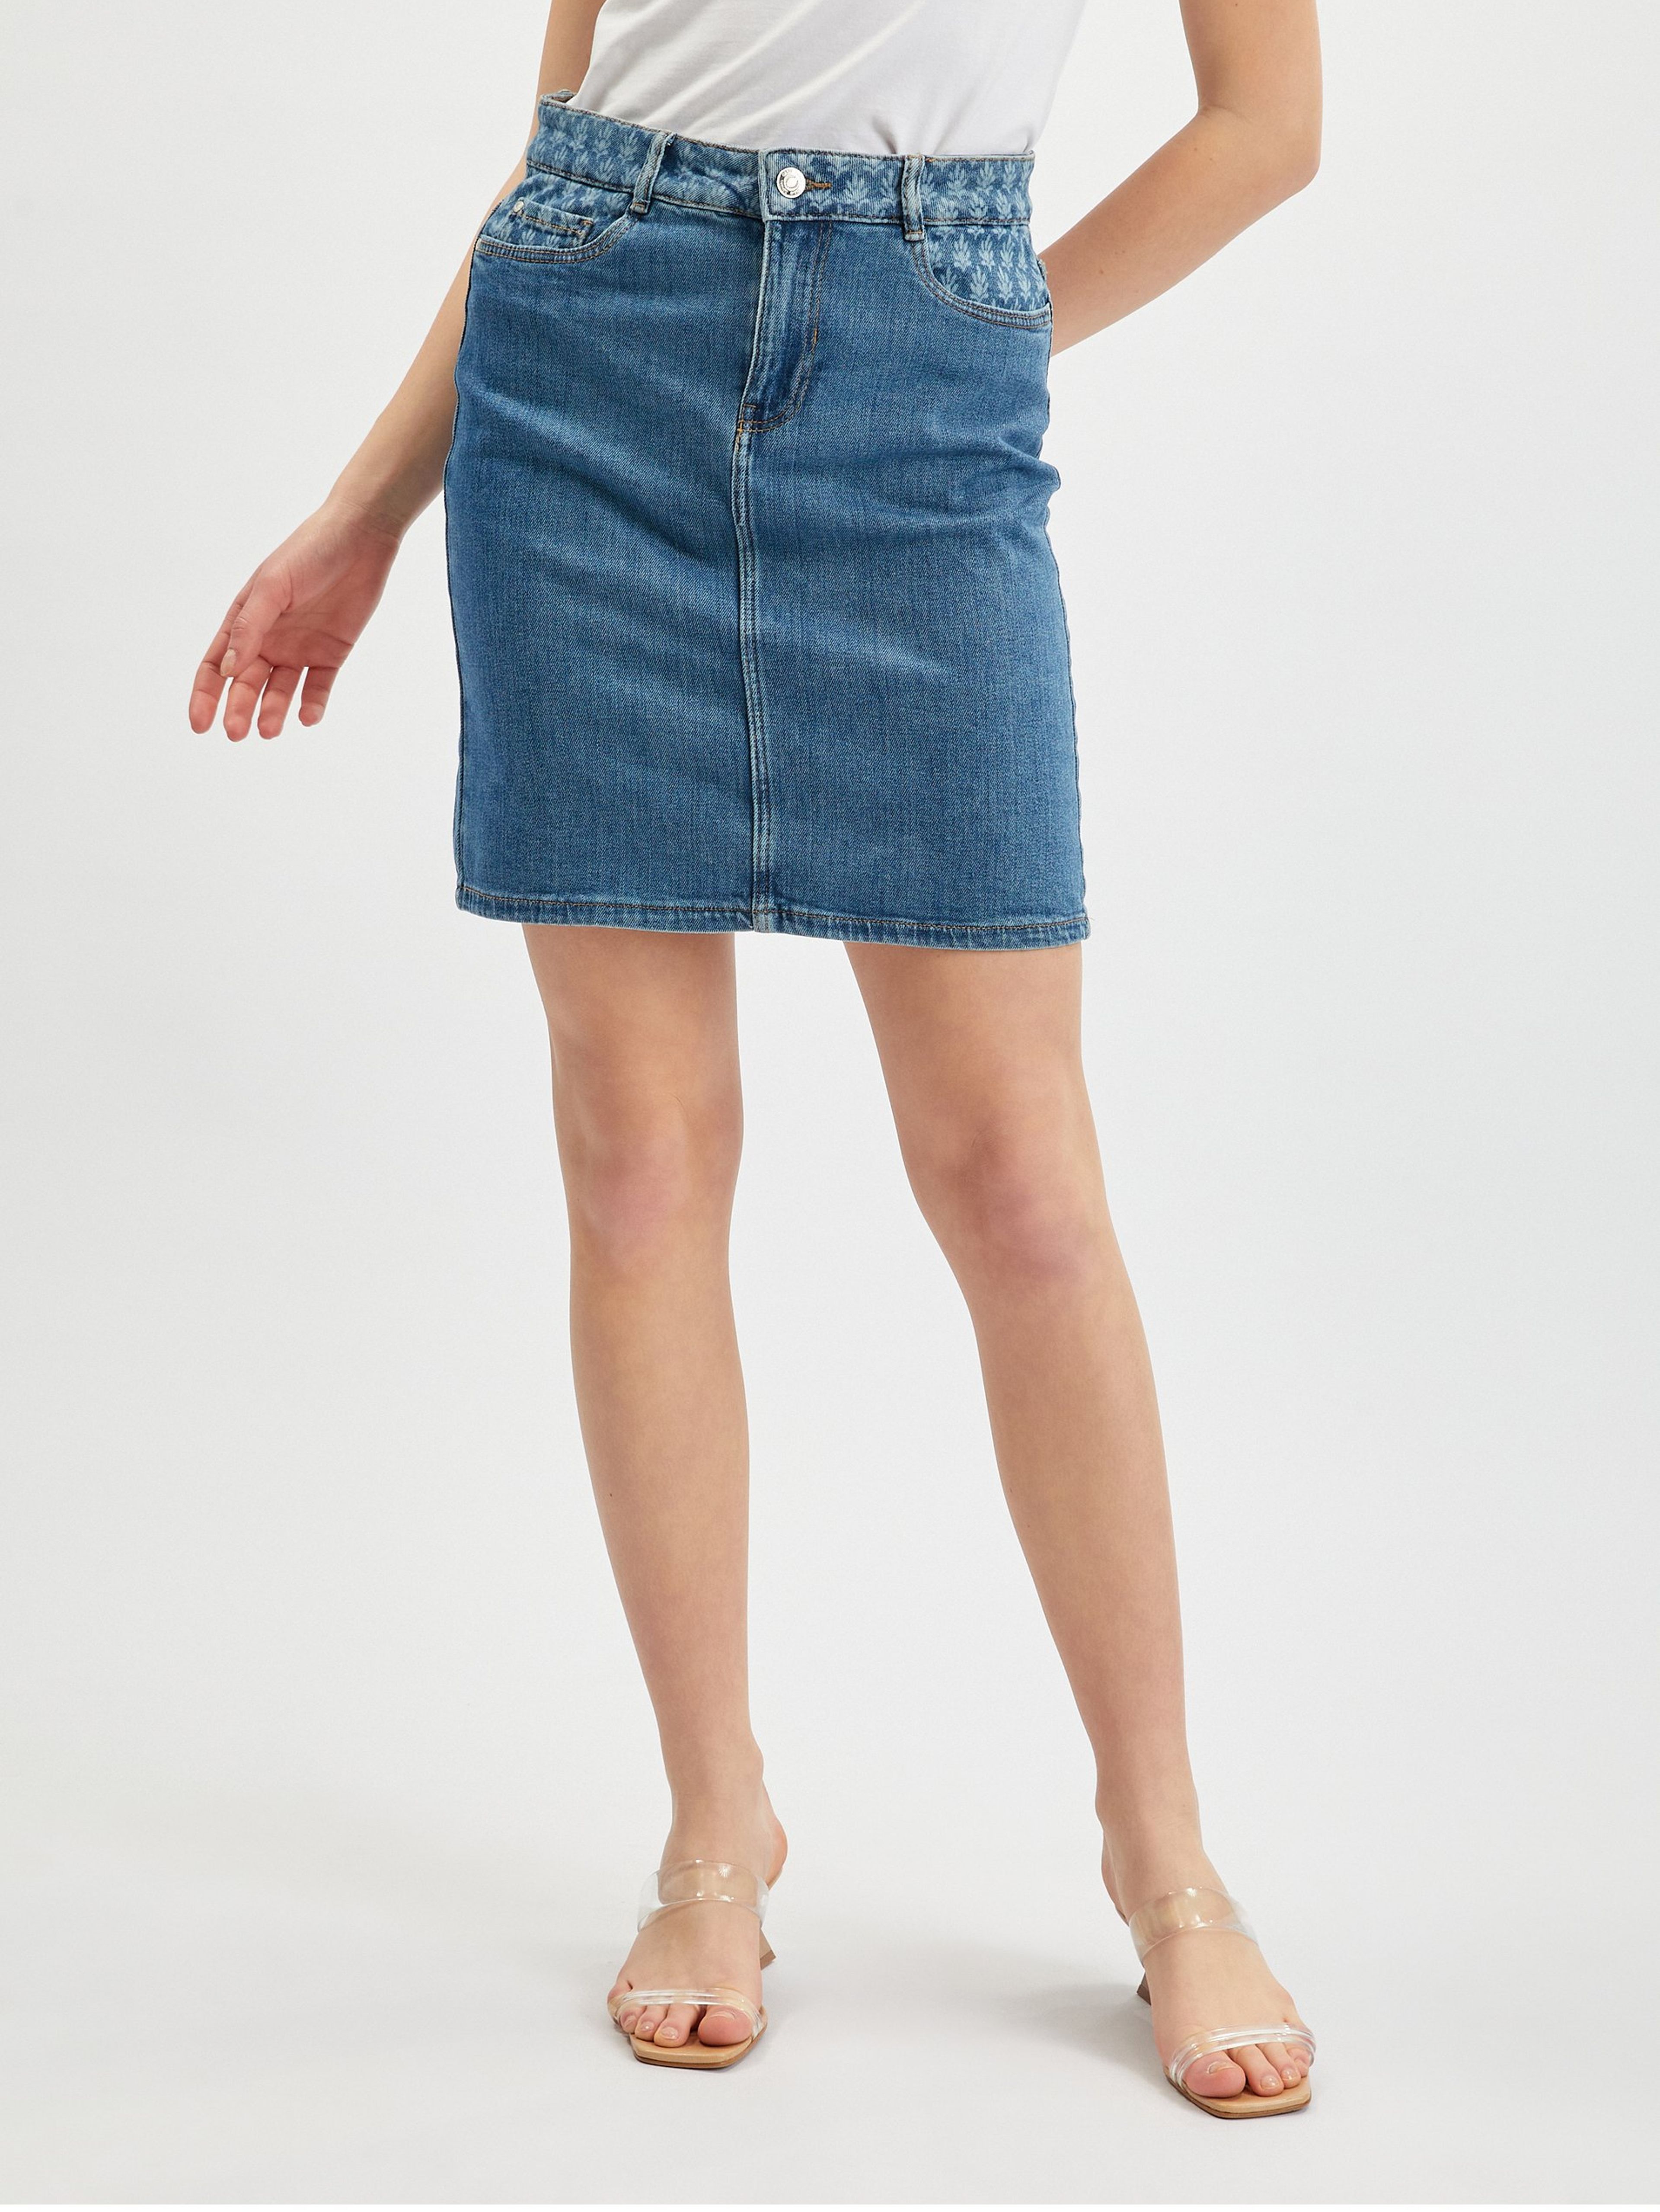 Niebieska spódnica jeansowa damska ORSAY